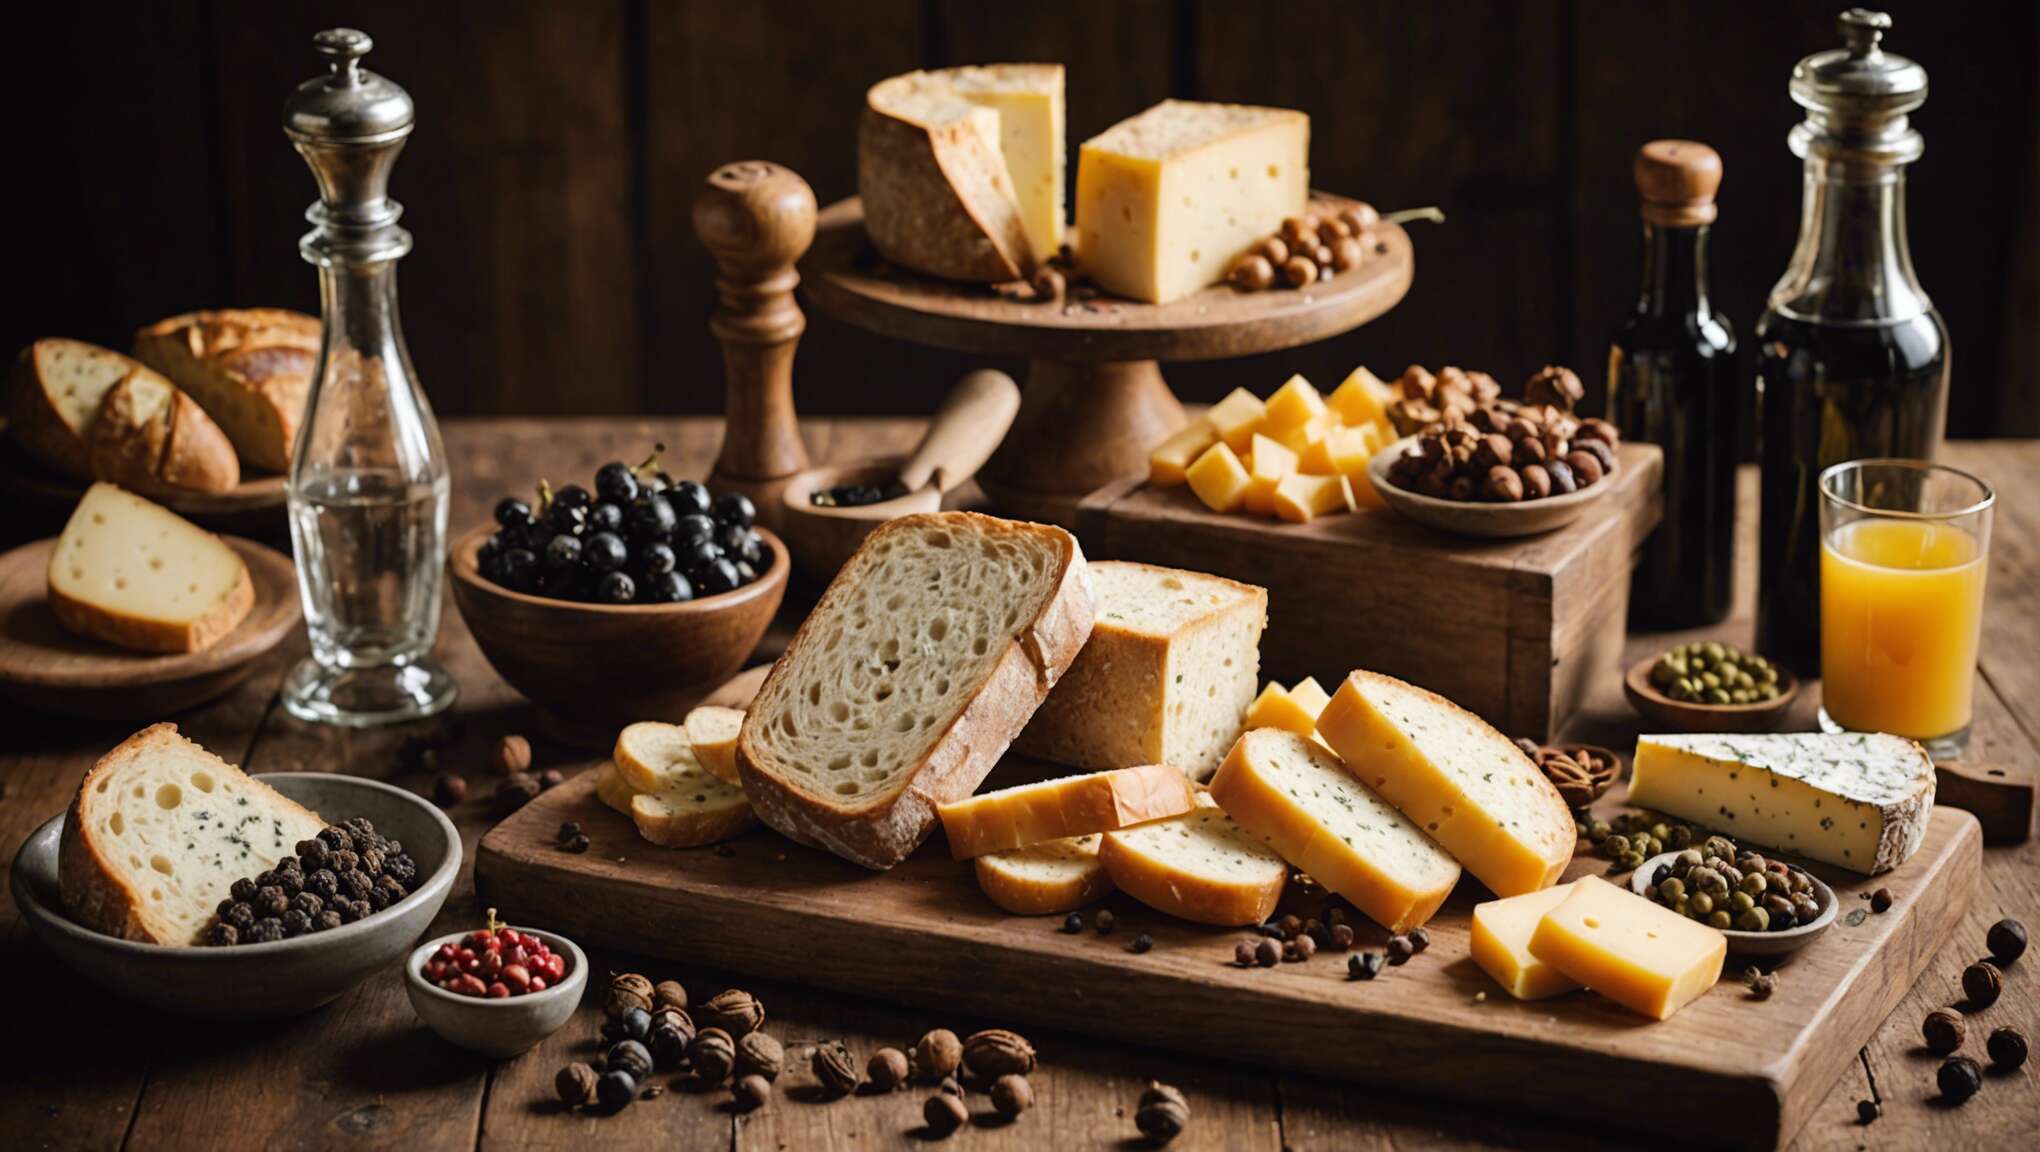 Mariage vin, pain et fromage : la touche finale avec le poivre adéquat